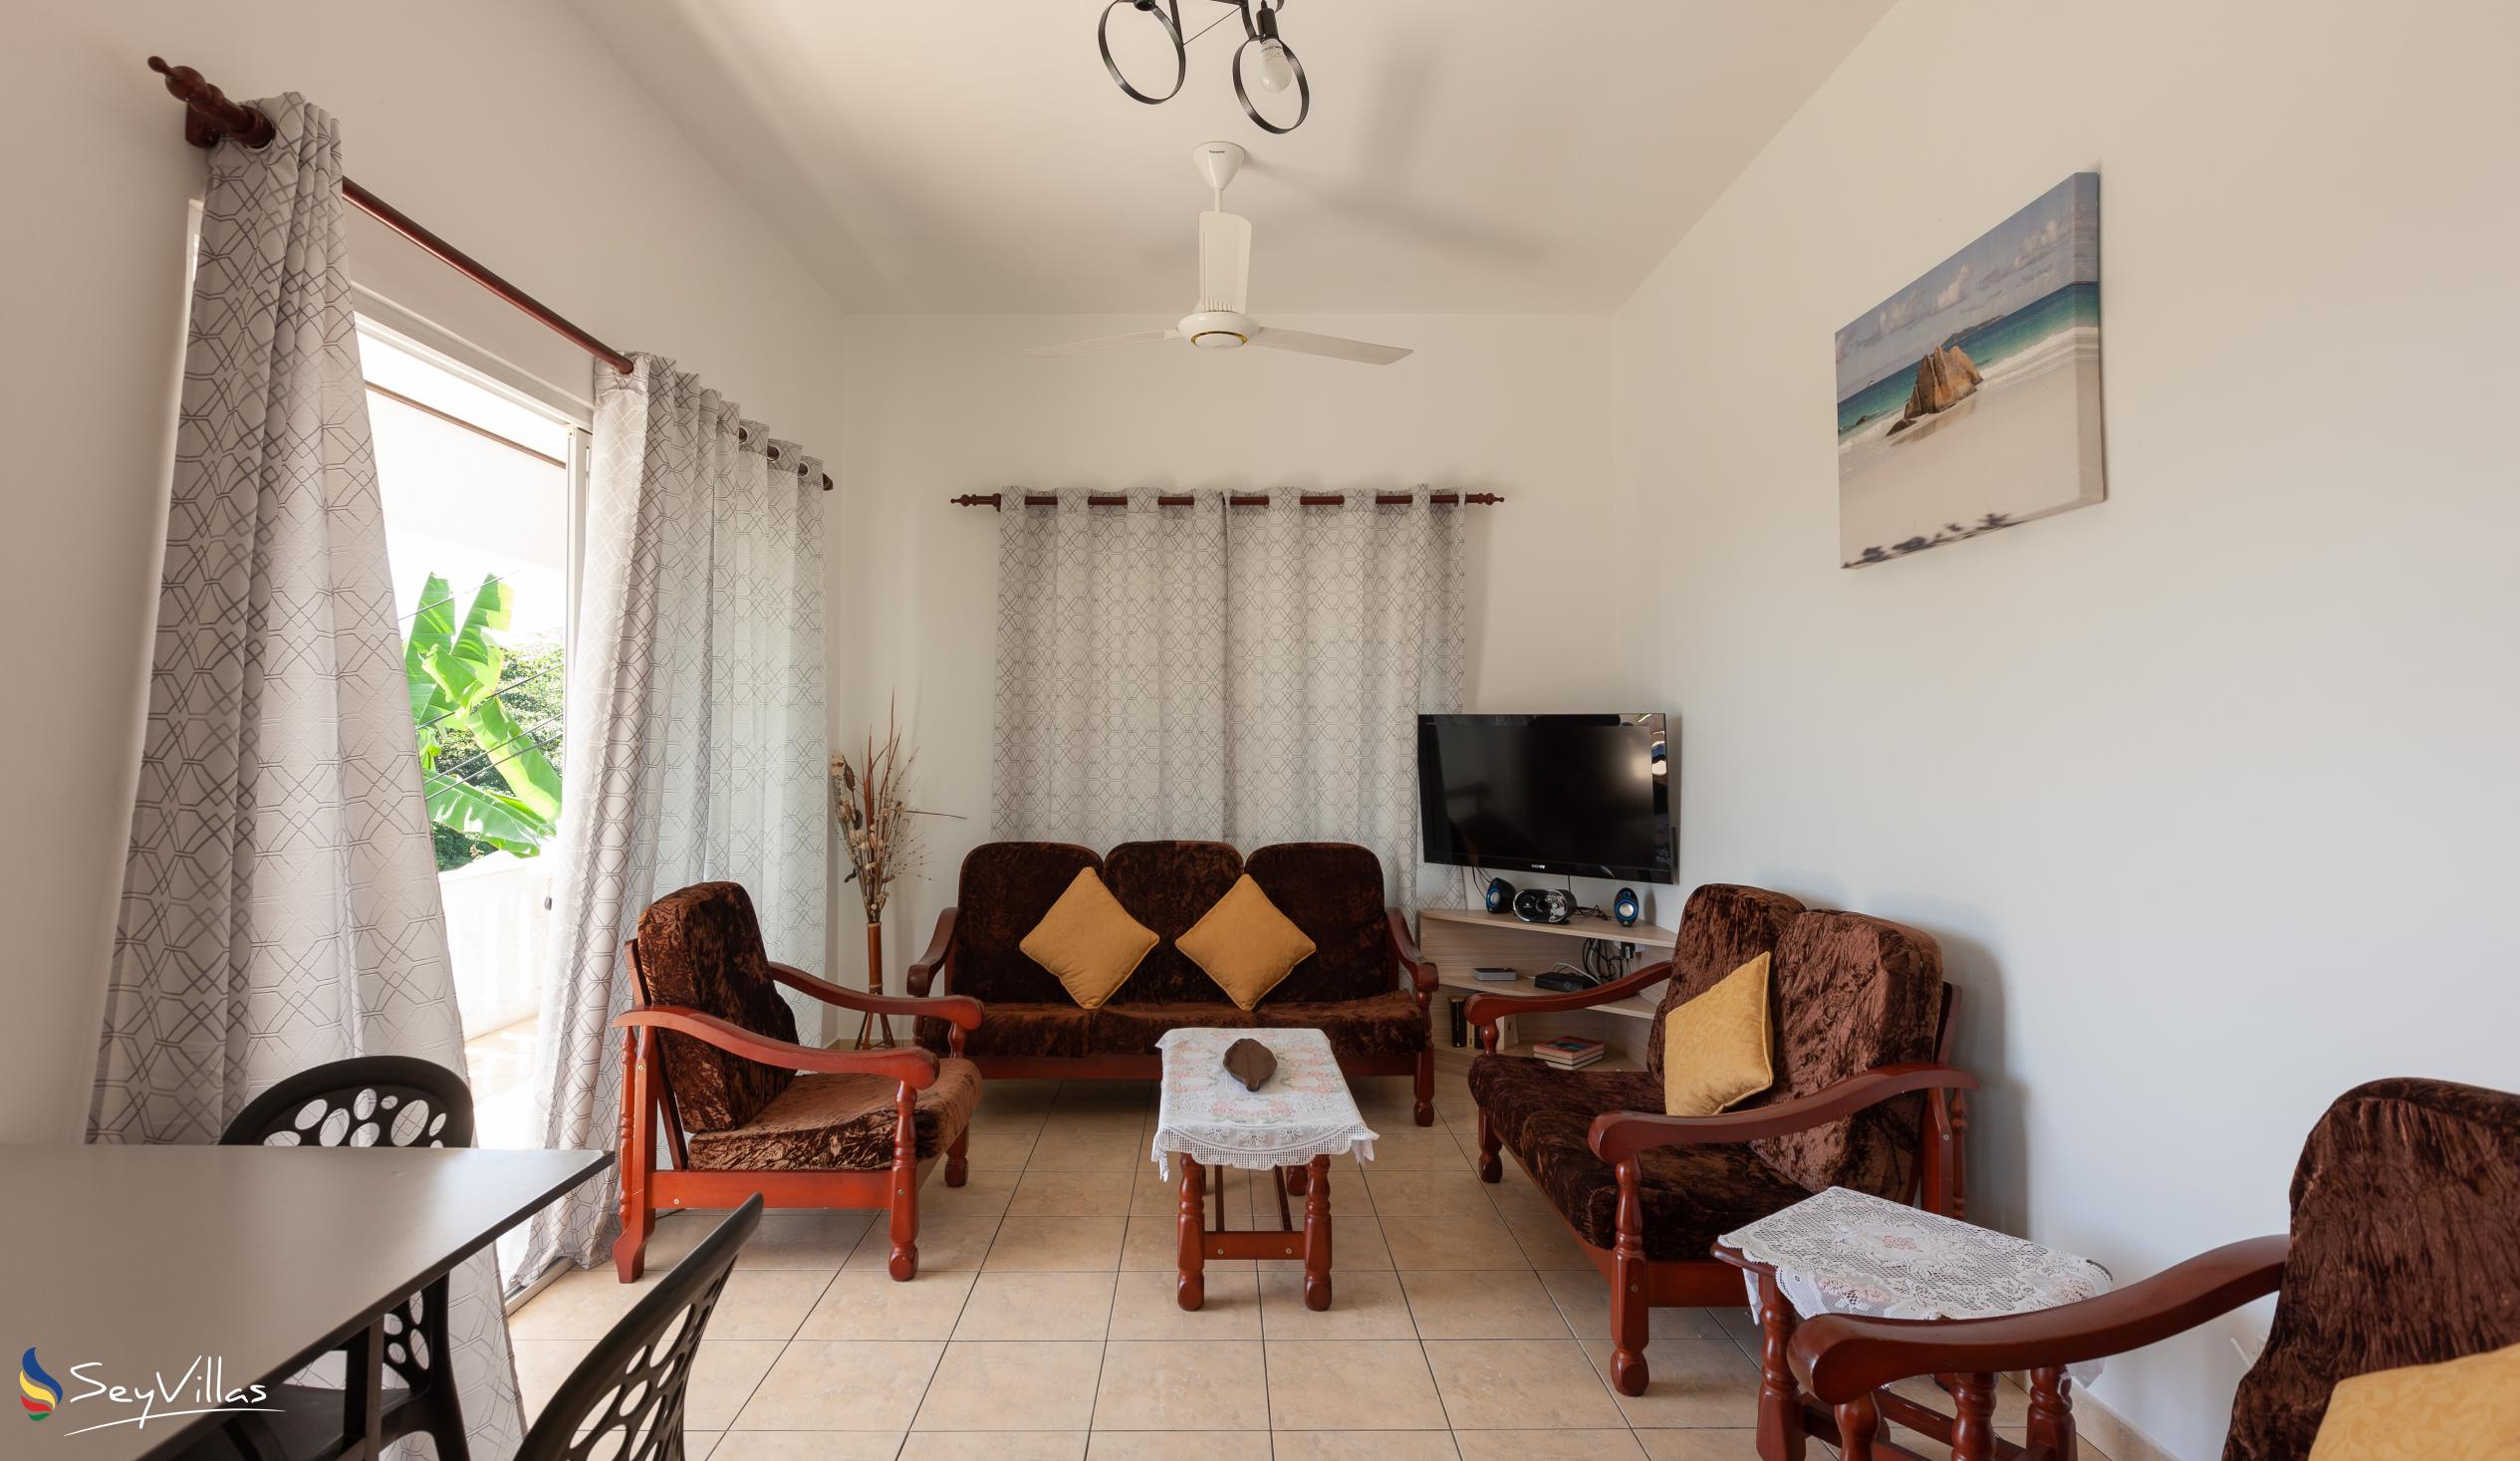 Foto 14: Saria Self Catering - Appartamento con 3 camere - Praslin (Seychelles)